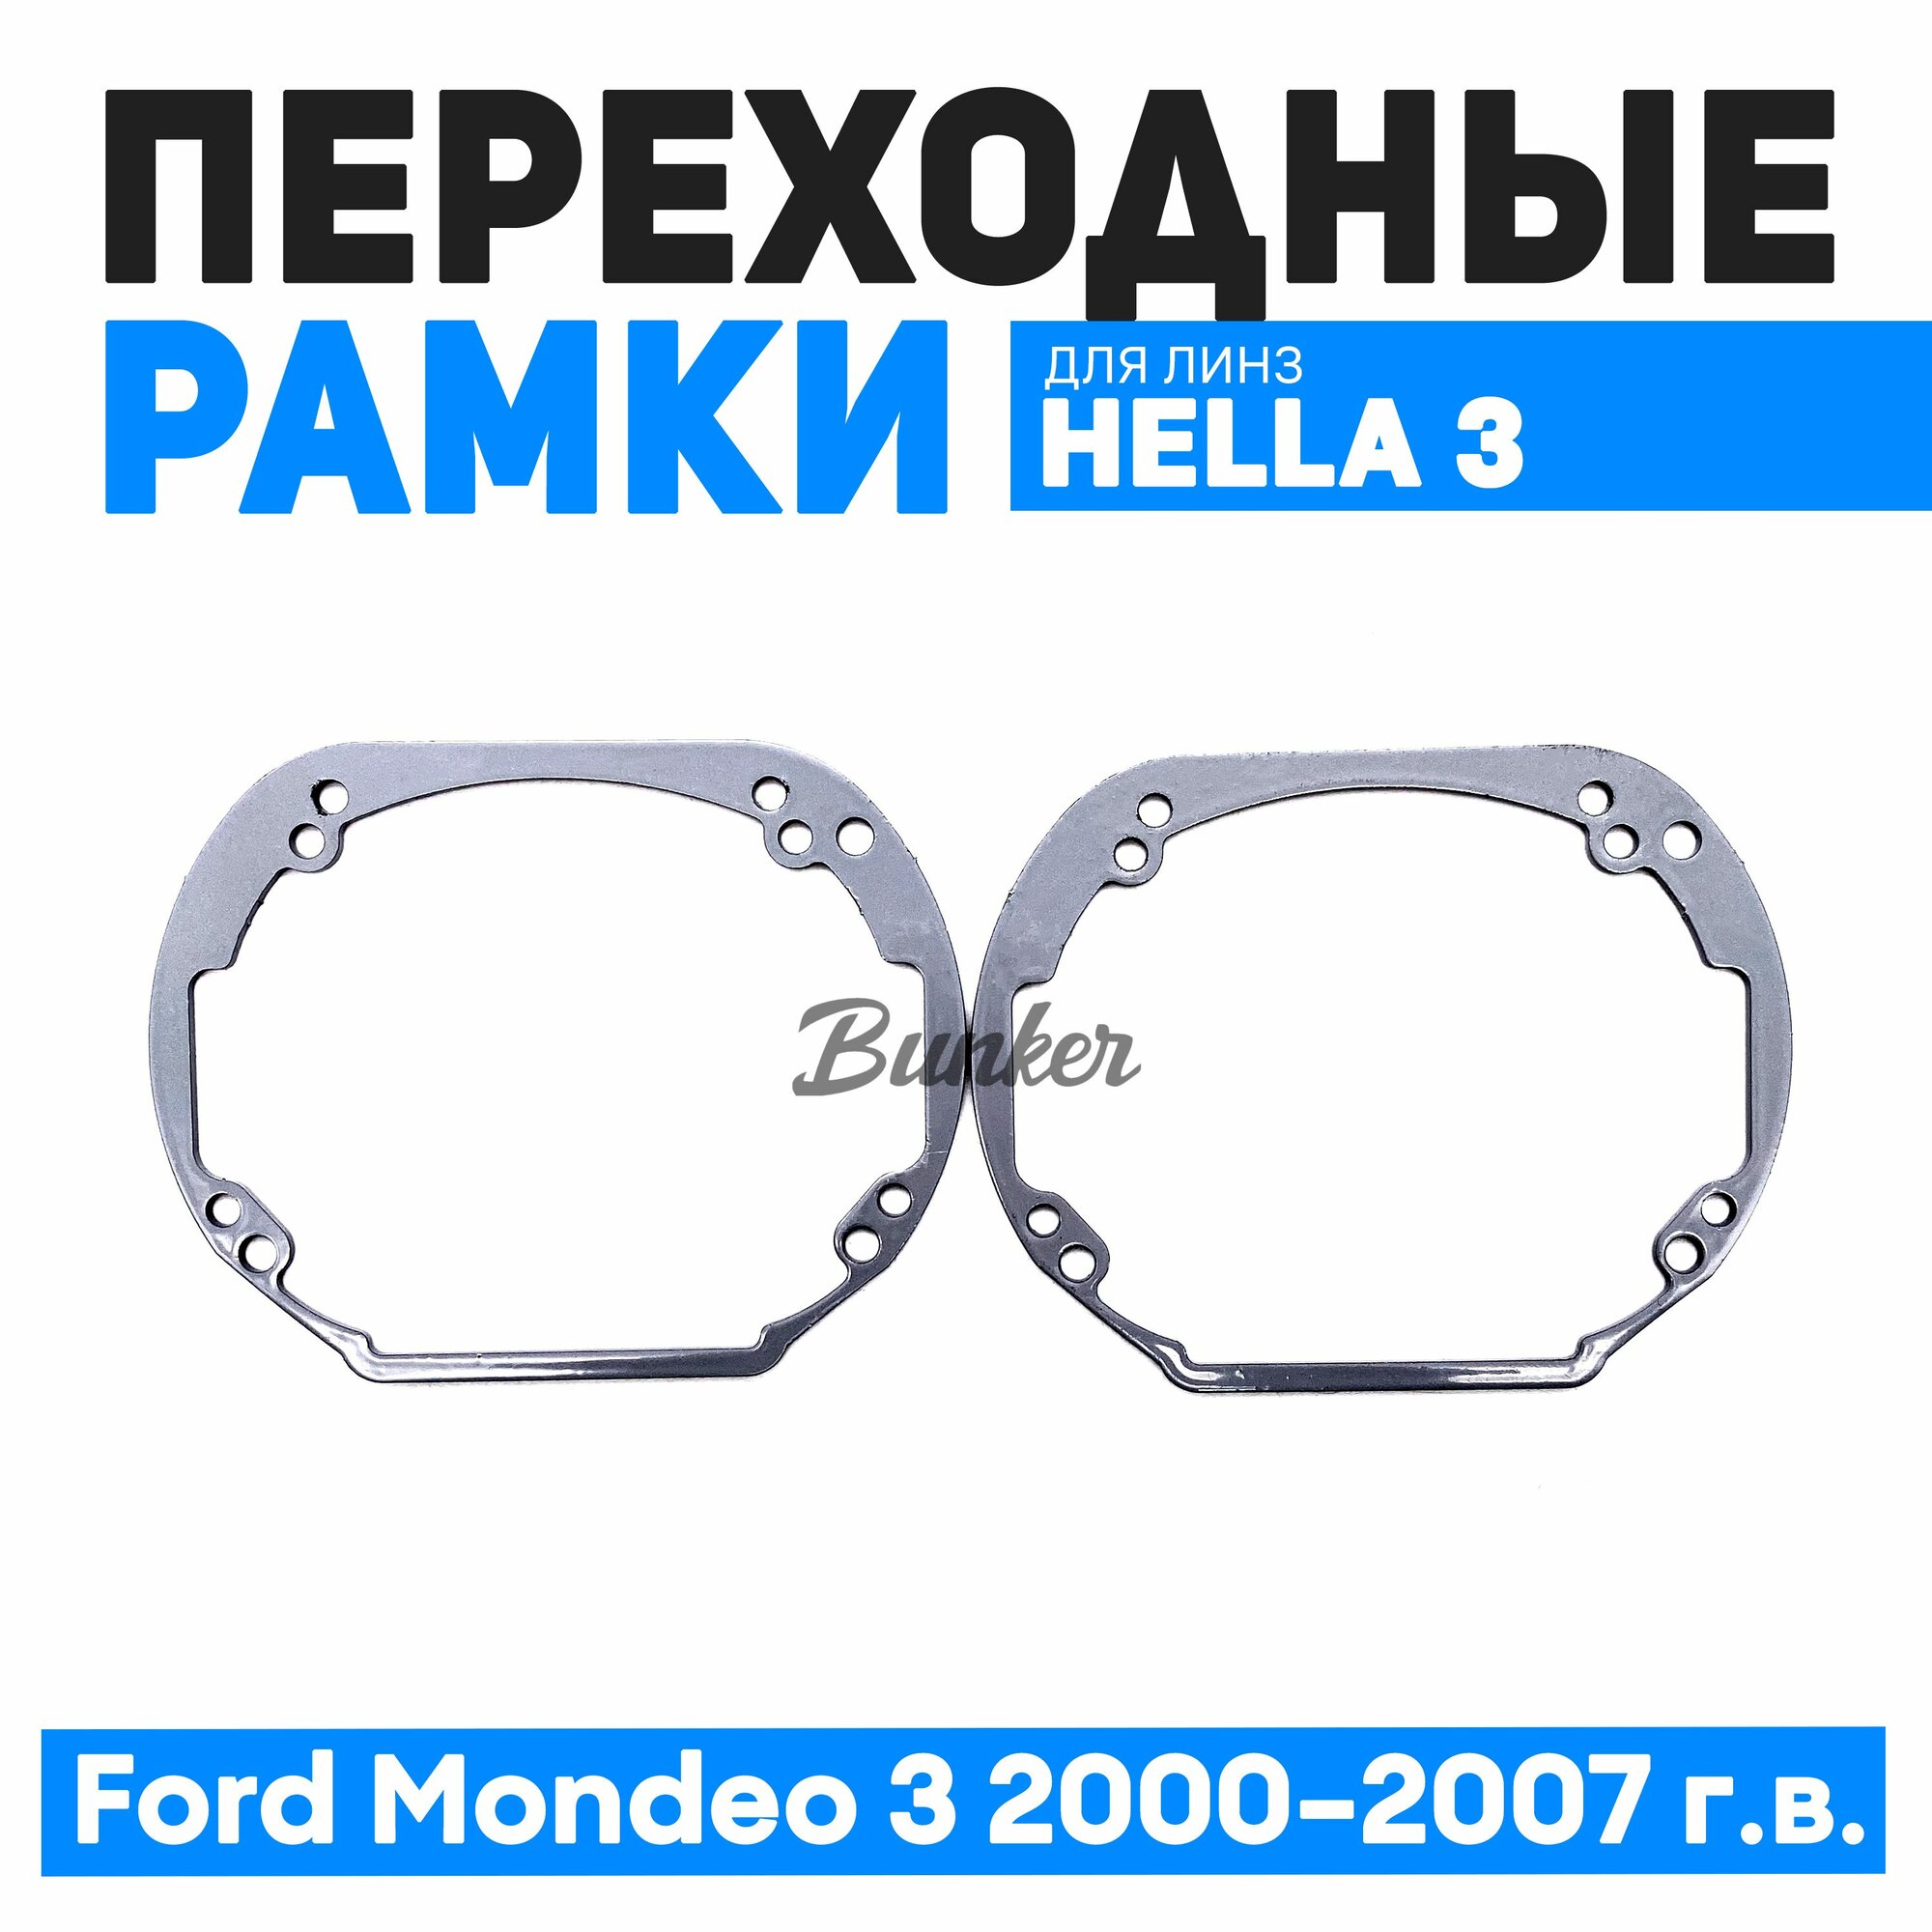 Переходные рамки для замены линз Ford Mondeo 3 2000-2007 г. в.